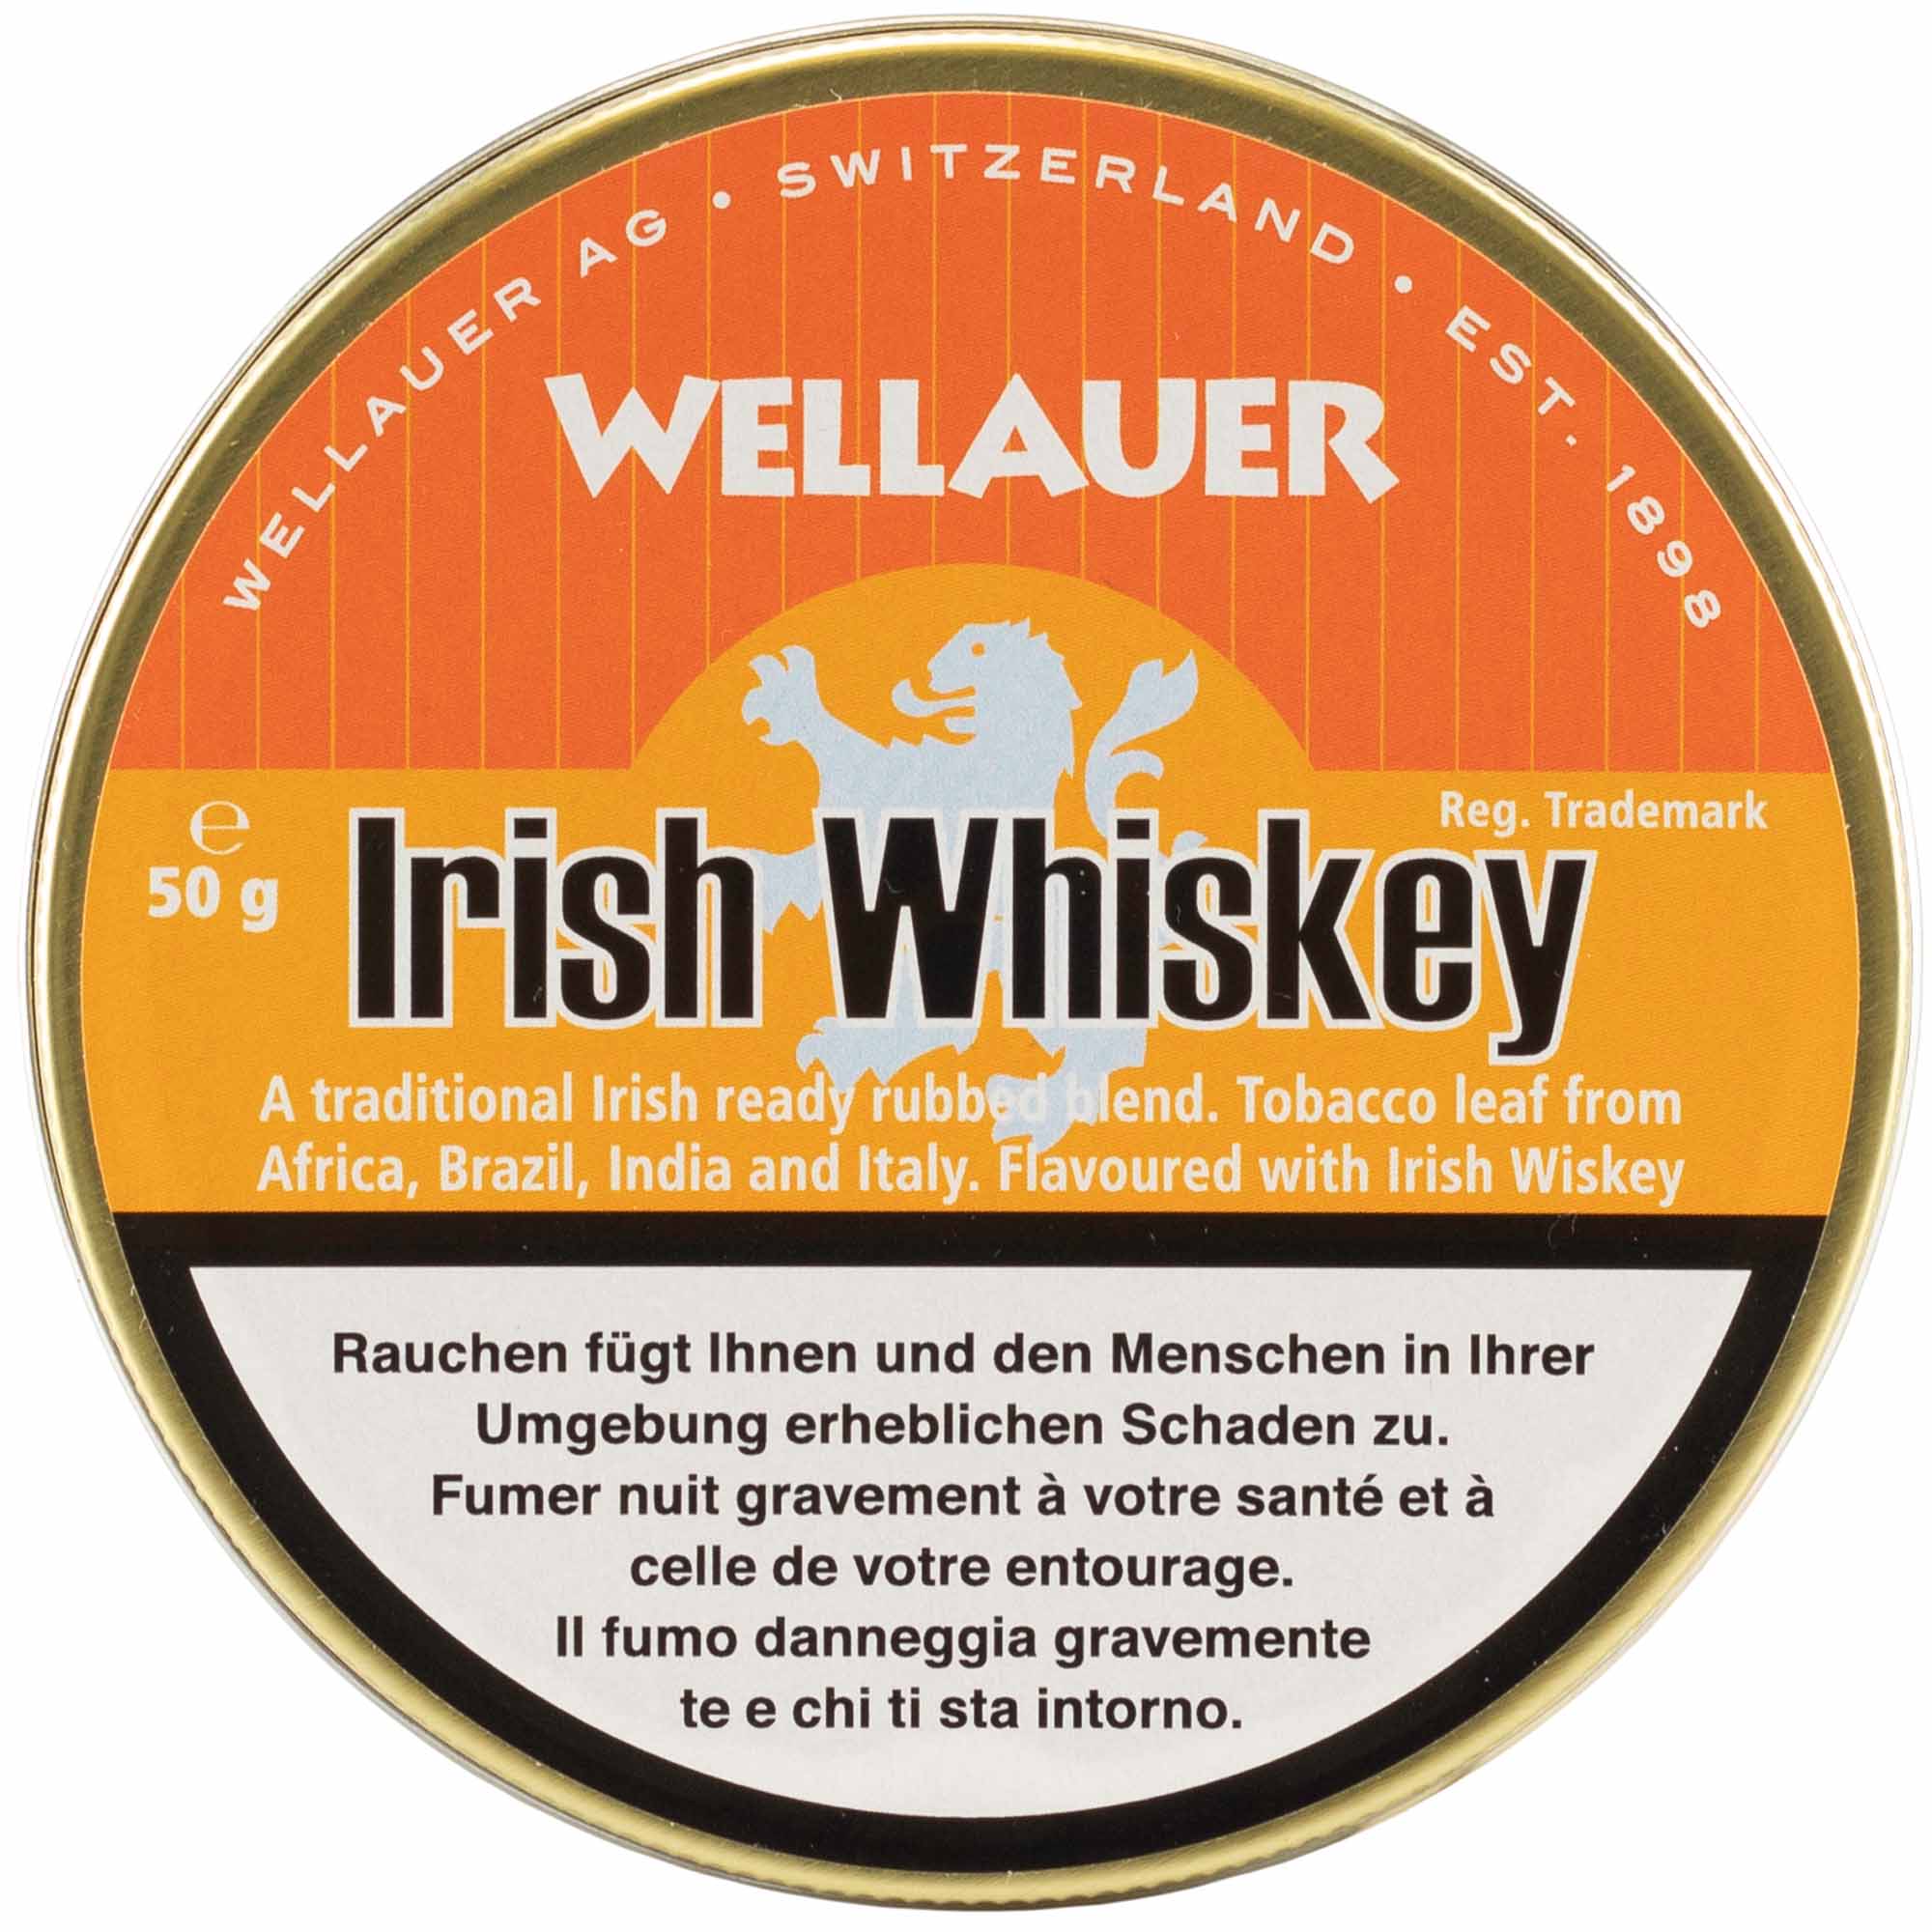 Wellauer's Pfeifentabak Irish Whiskey - 50g Tin